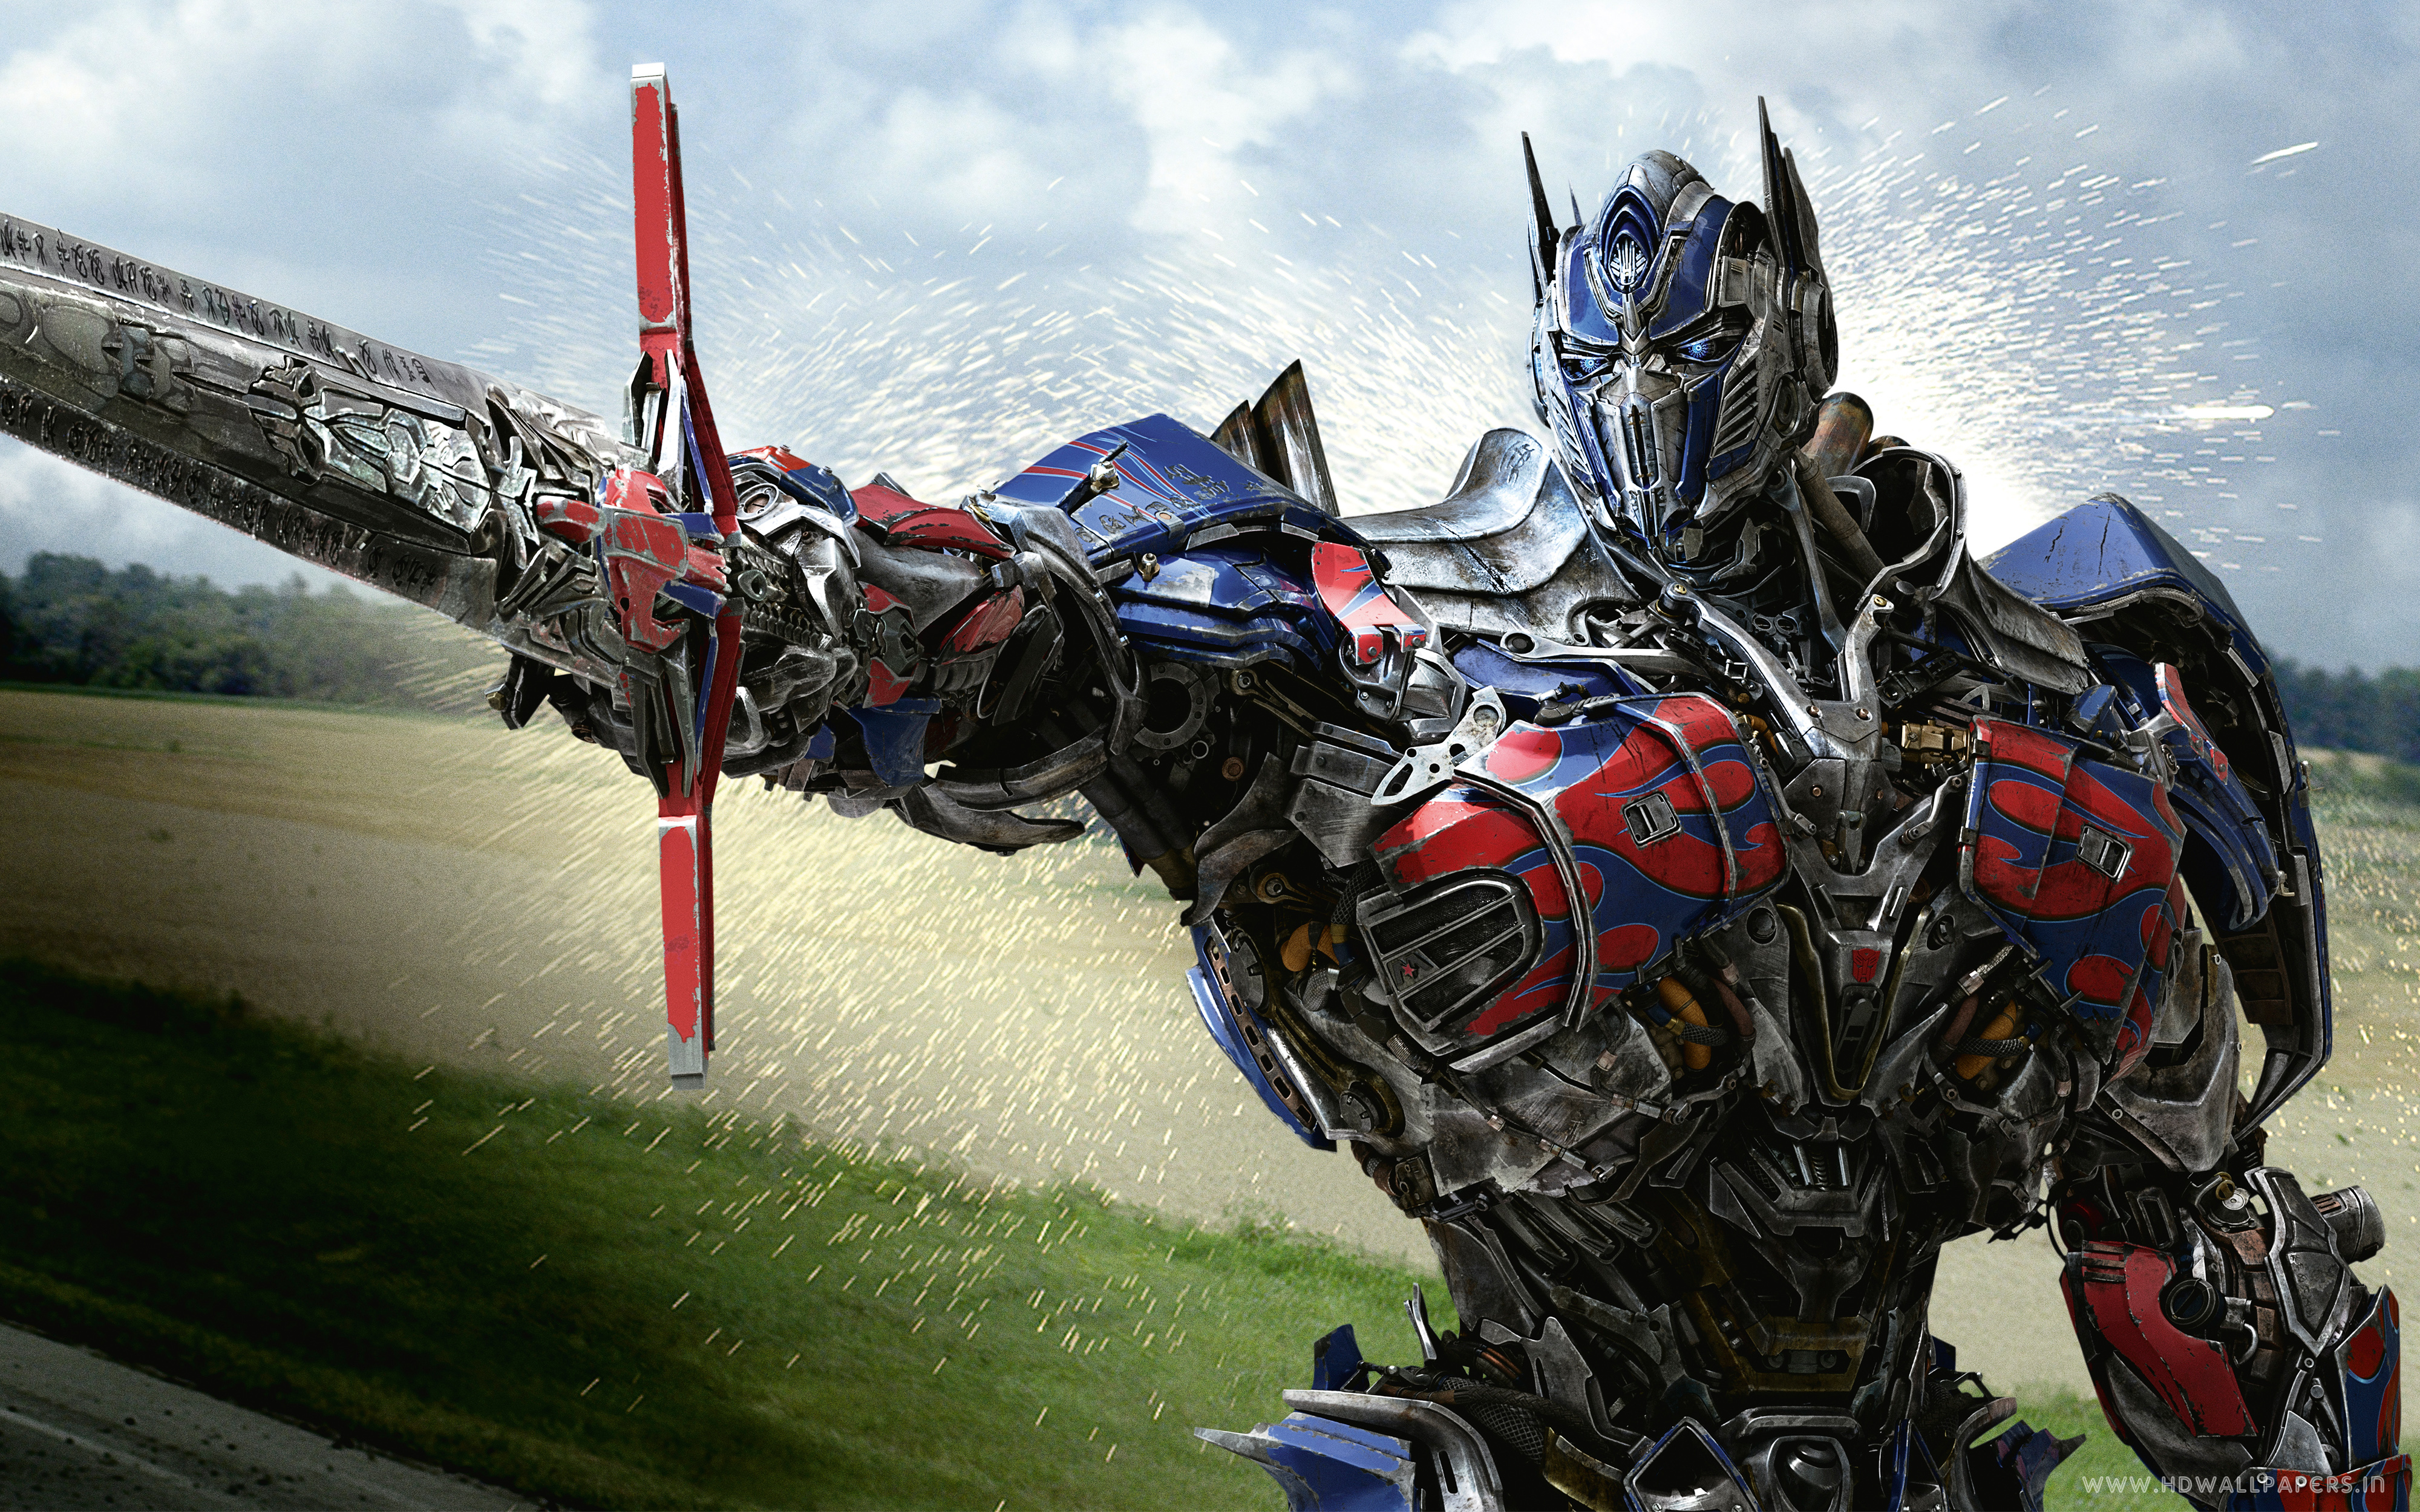 Transformers 4 Age of Extinction: Đó là bộ phim hành động kì diệu, đầy ắp những chiếc xe huyền thoại và cả những Robot đầy tinh thần chiến đấu. Nếu bạn yêu thích những cảnh hành động mãn nhãn và tình tiết ly kỳ, thì đây chắc chắn là bộ phim không thể bỏ lỡ!